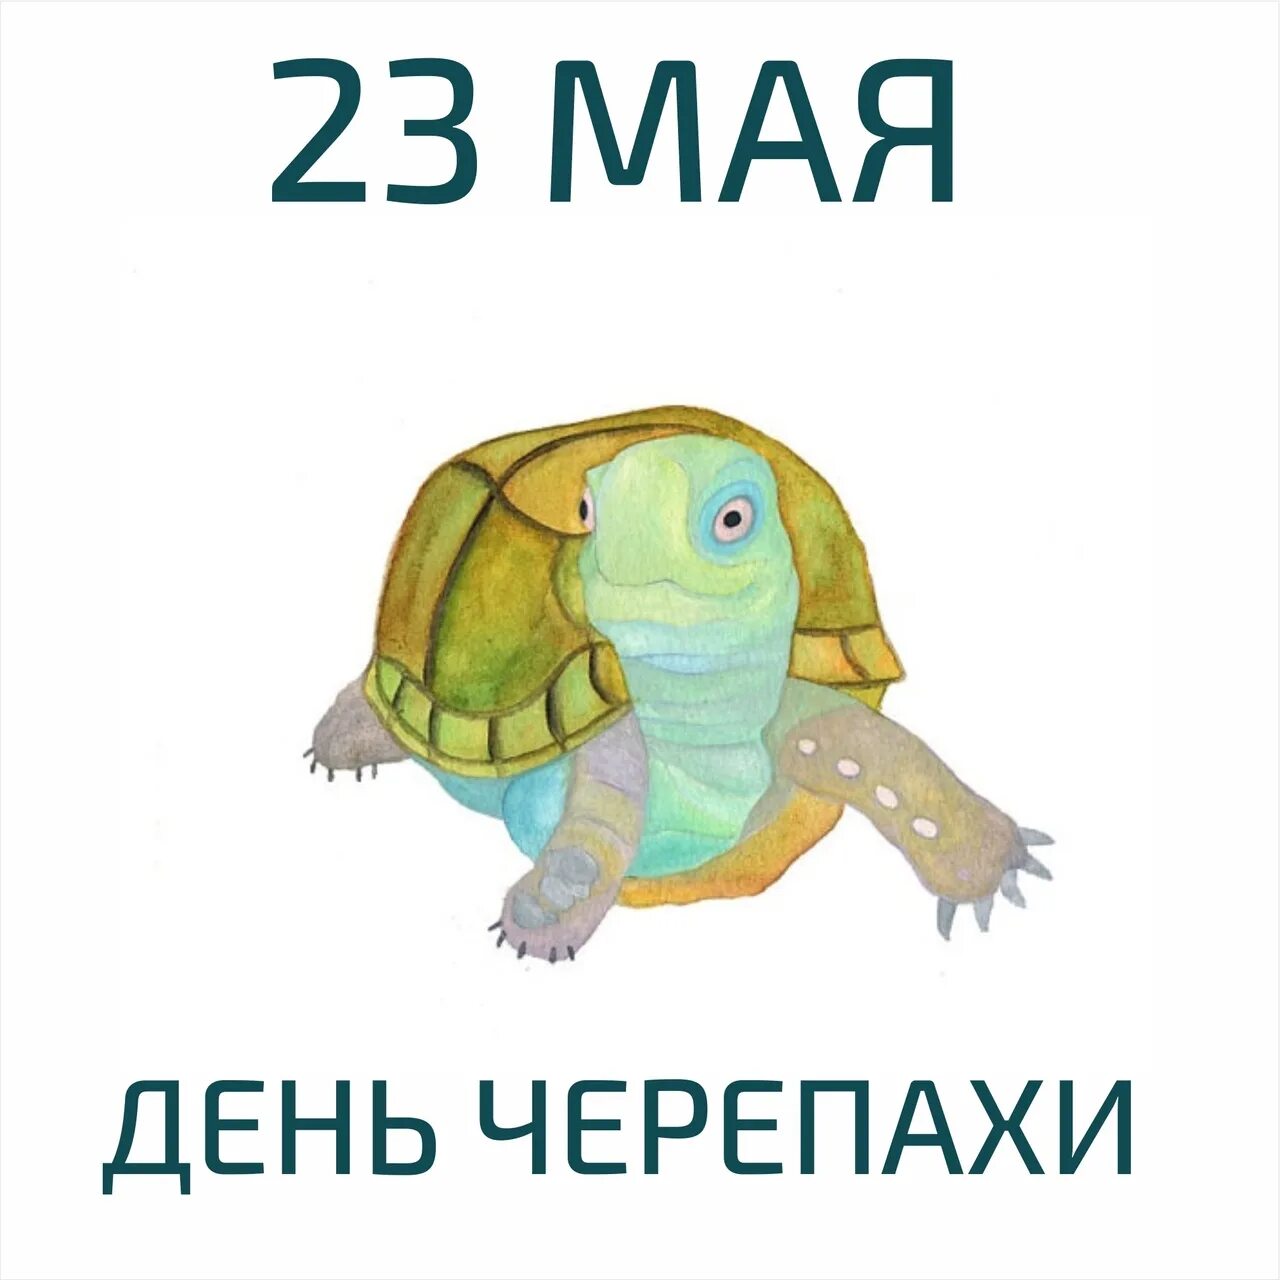 23 мая 2023 г. 23 Мая день черепах. 23 Мая день черепахи праздник Всемирный. День черепахи 23 мая 2022. 23 Мая праздник день черепахи.